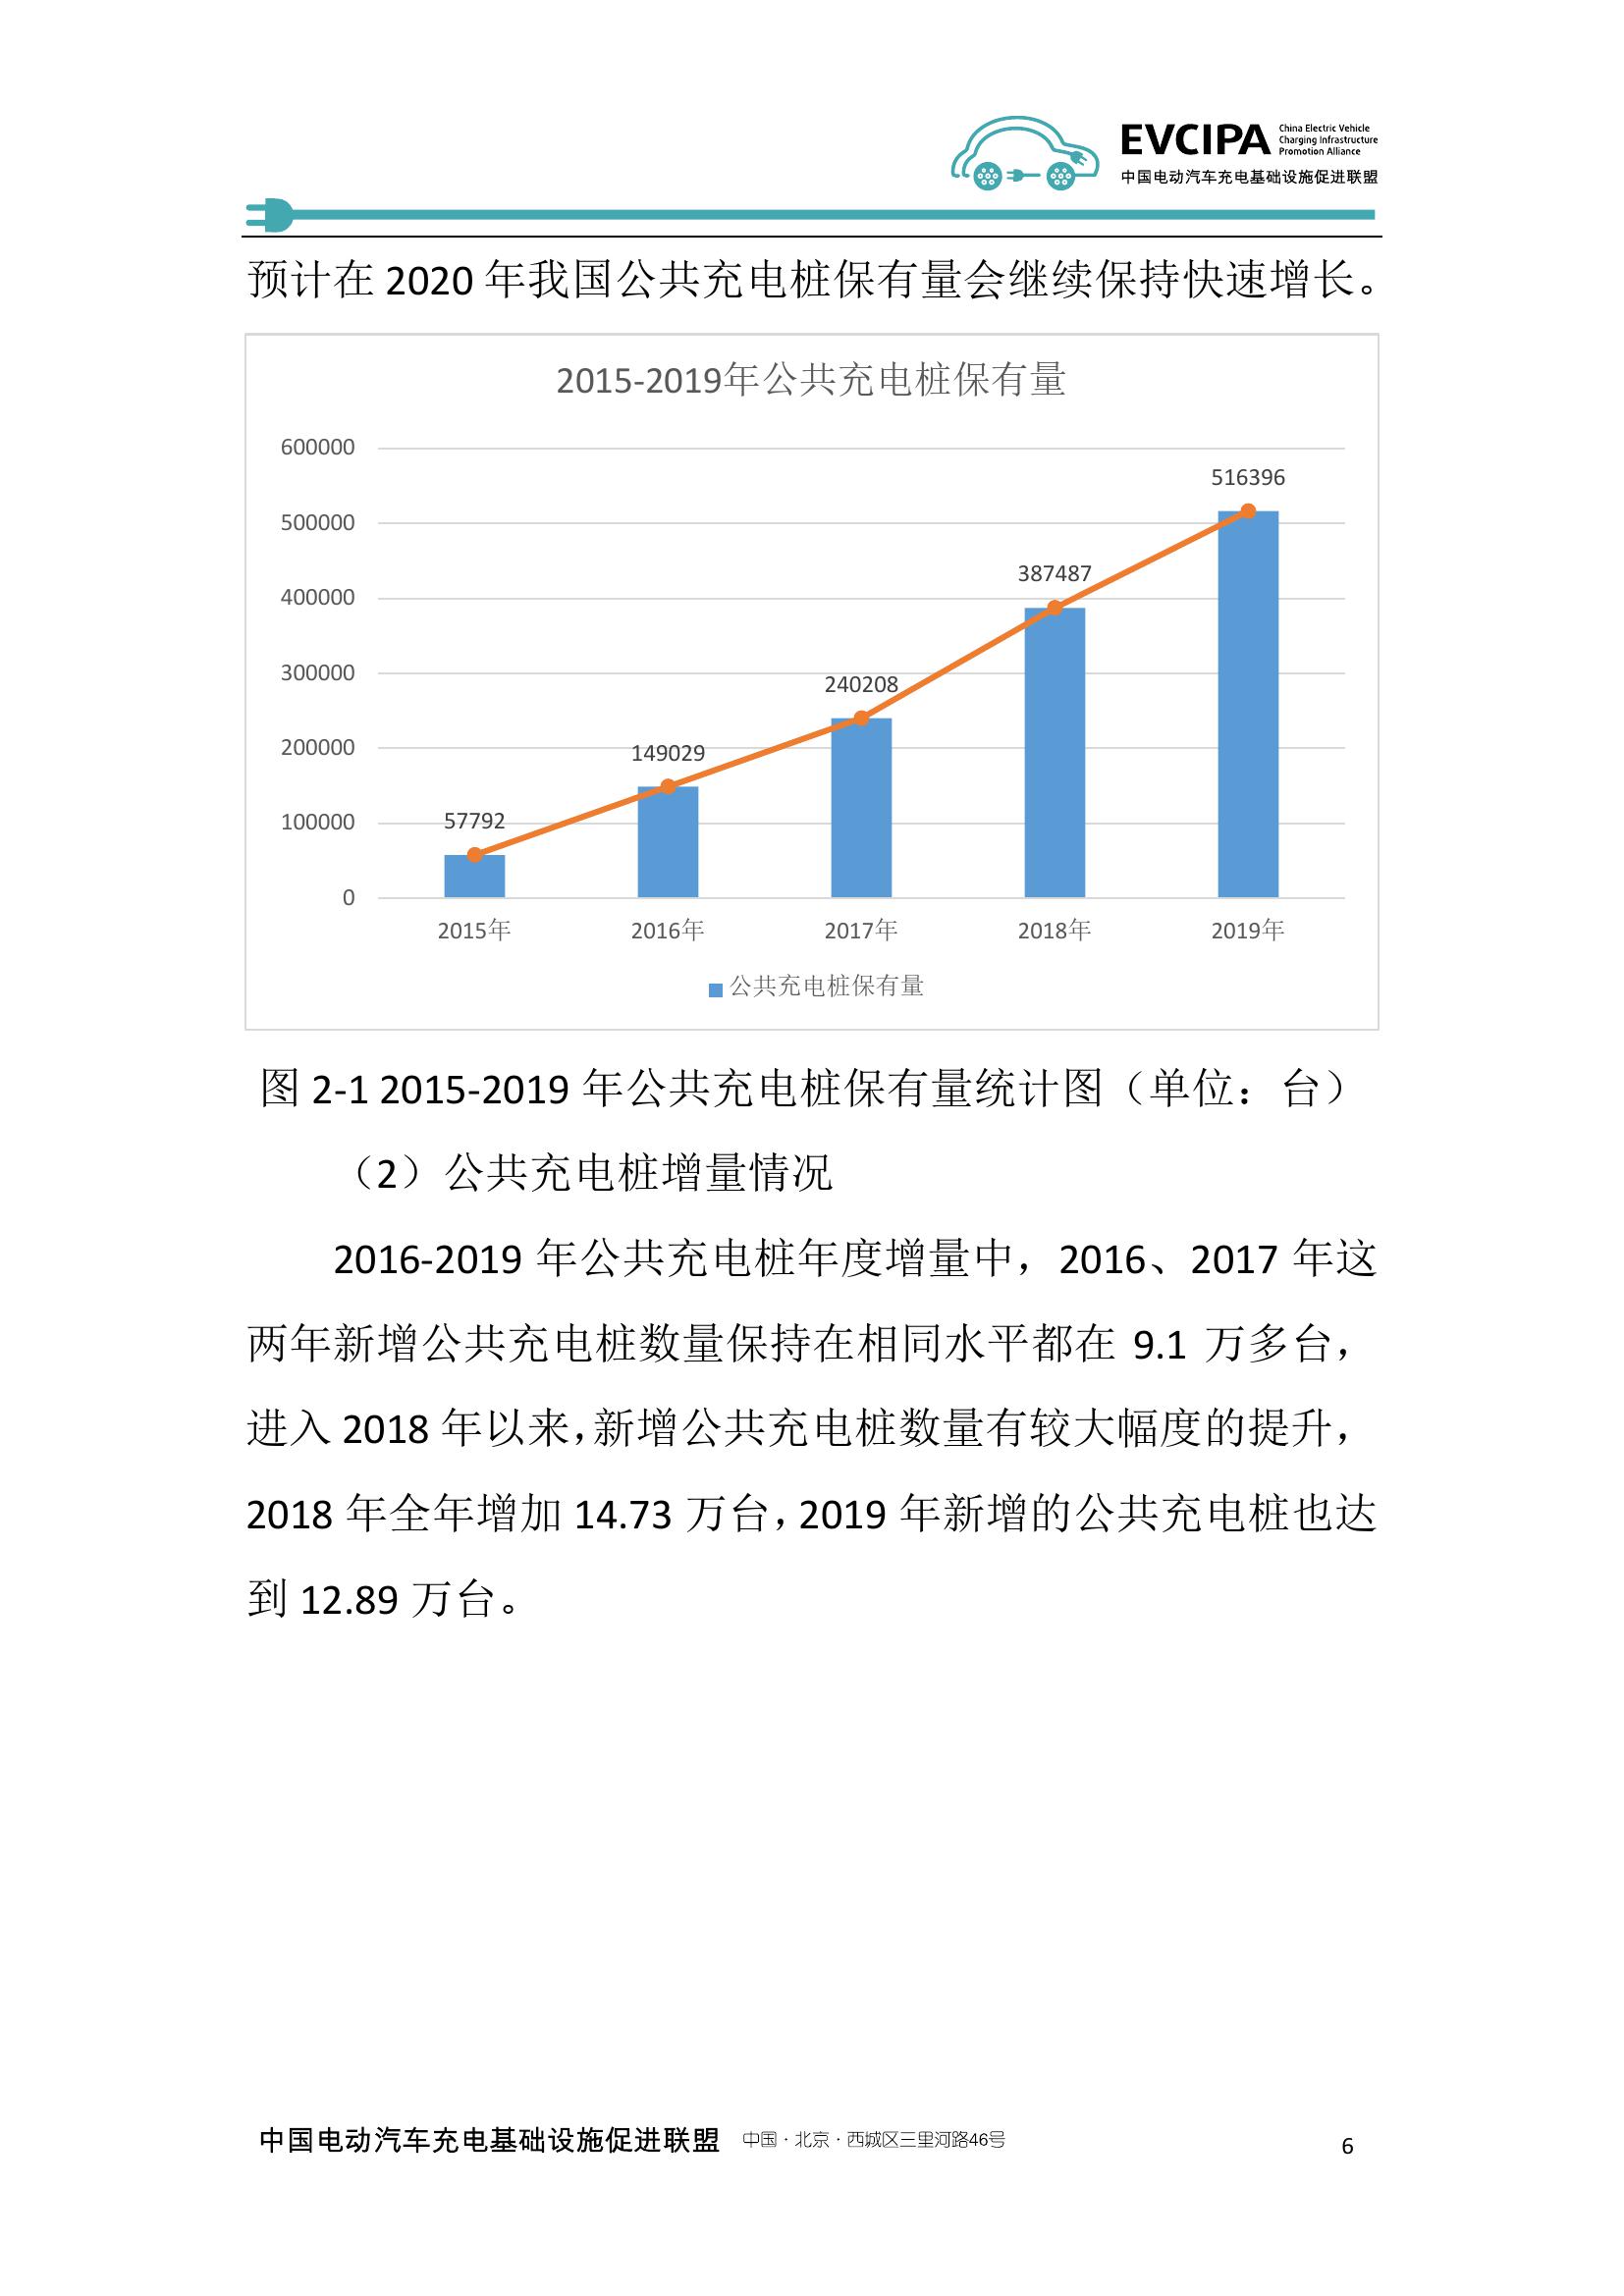 2019-2020年度中国充电基础设施发展报告_000014.jpg